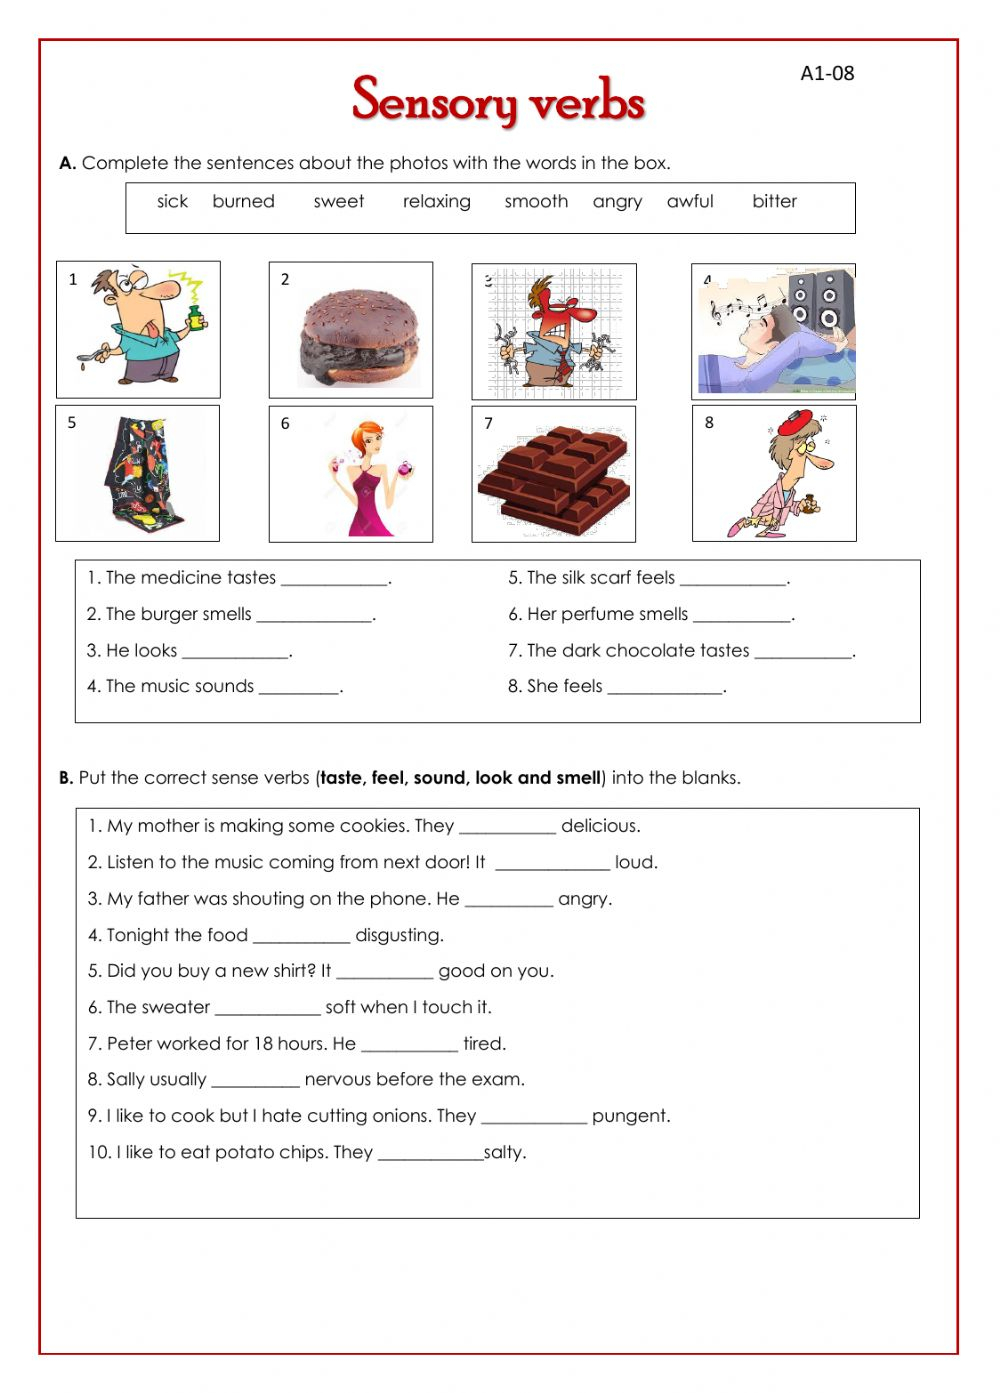 Sensory Verbs Worksheet